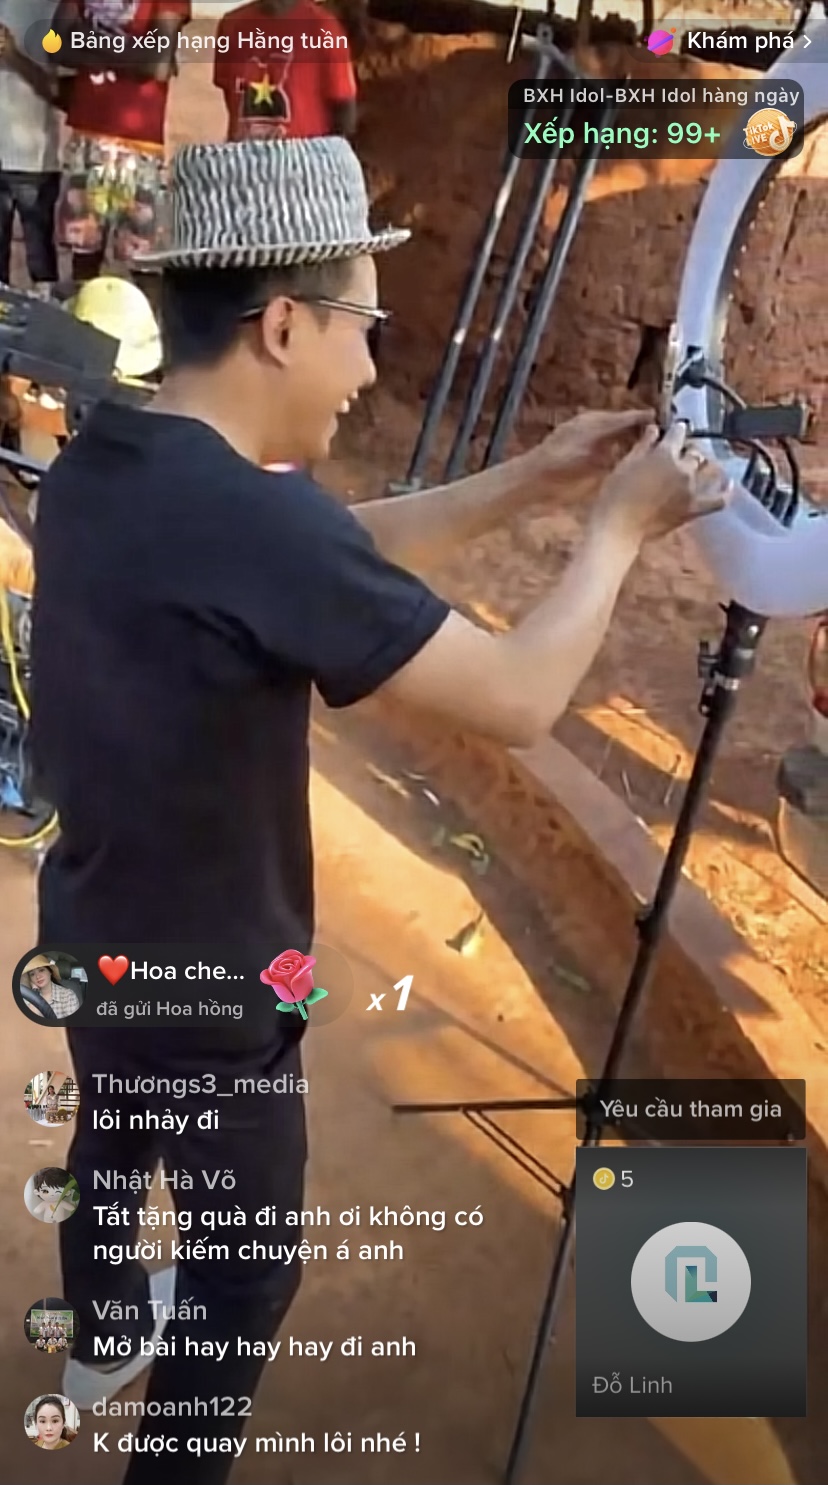 Quang Linh Vlogs còn đầu tư đầy đủ 'đồ nghề' để livestream ở bản.